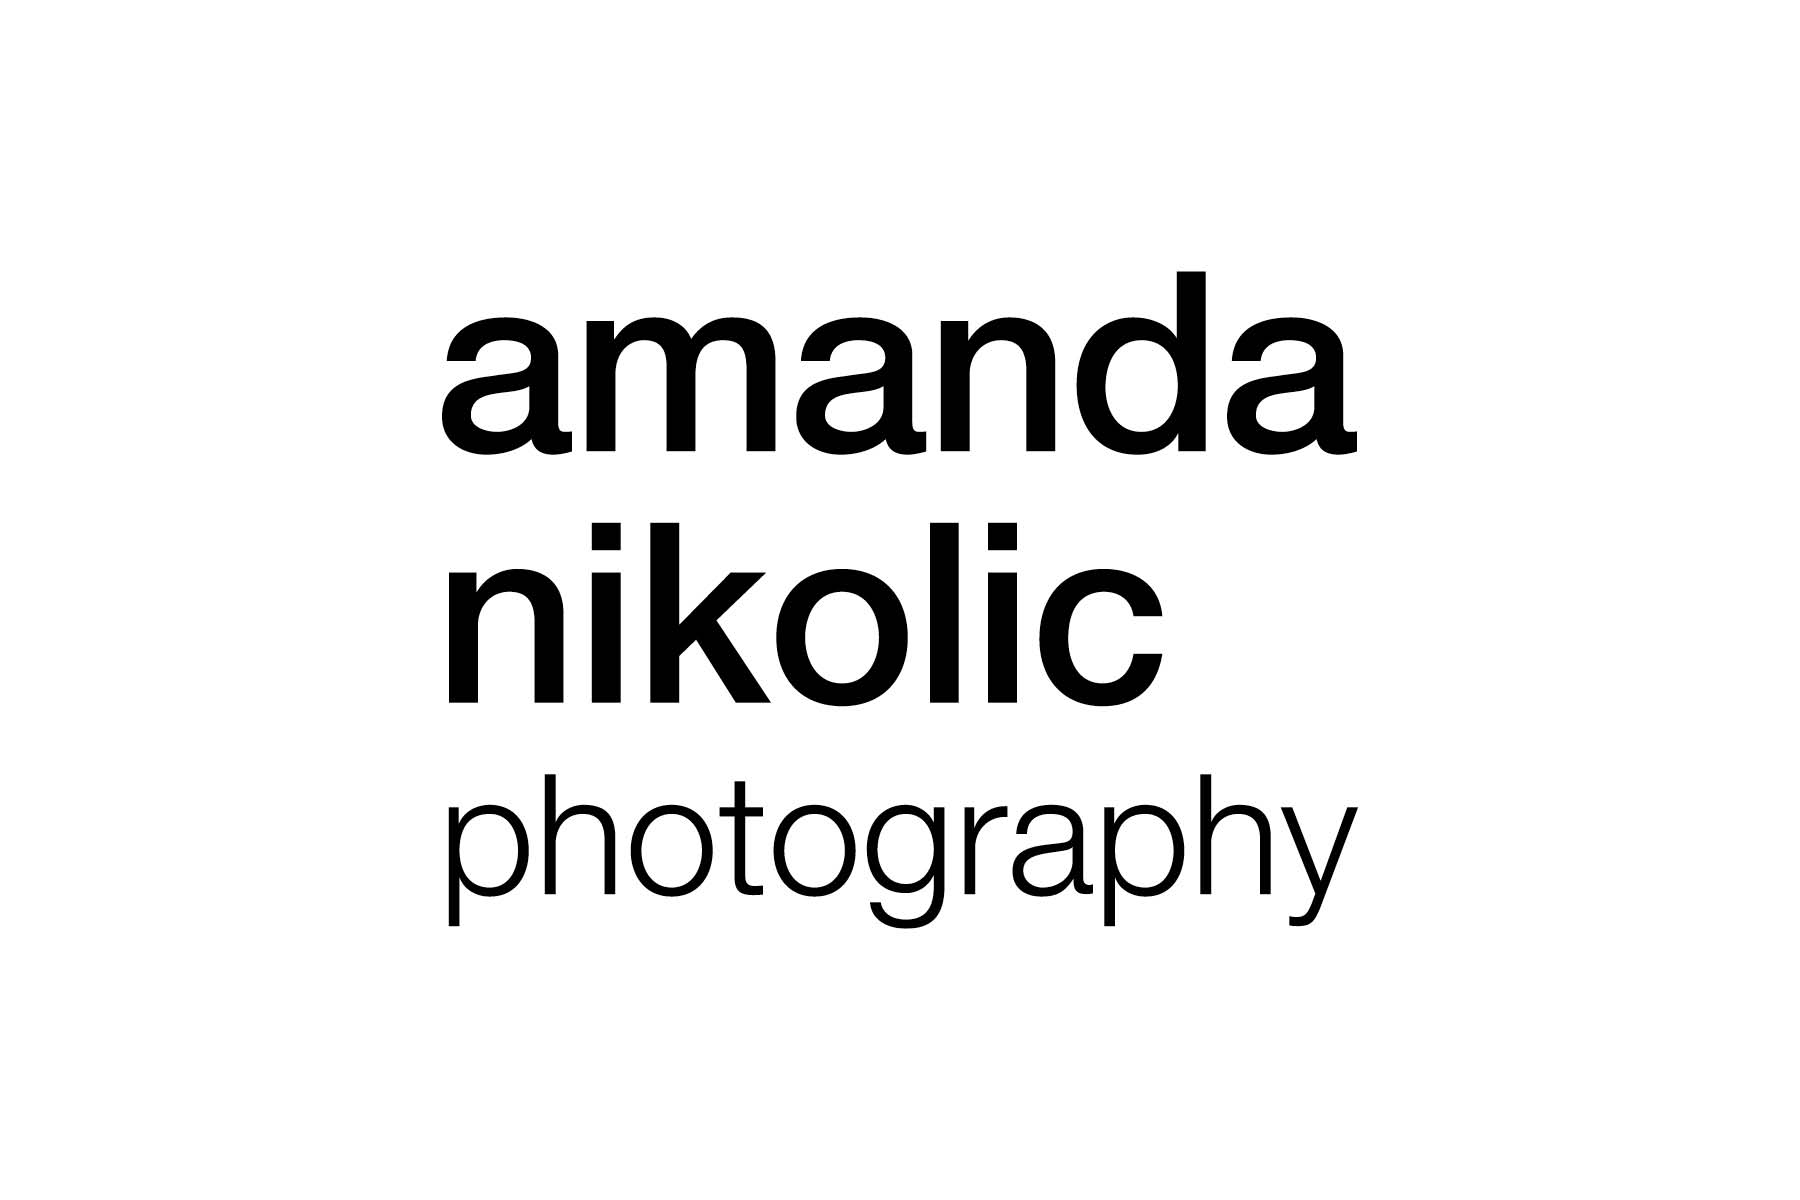 AMANDA NIKOLIC PHOTOGRAPHY